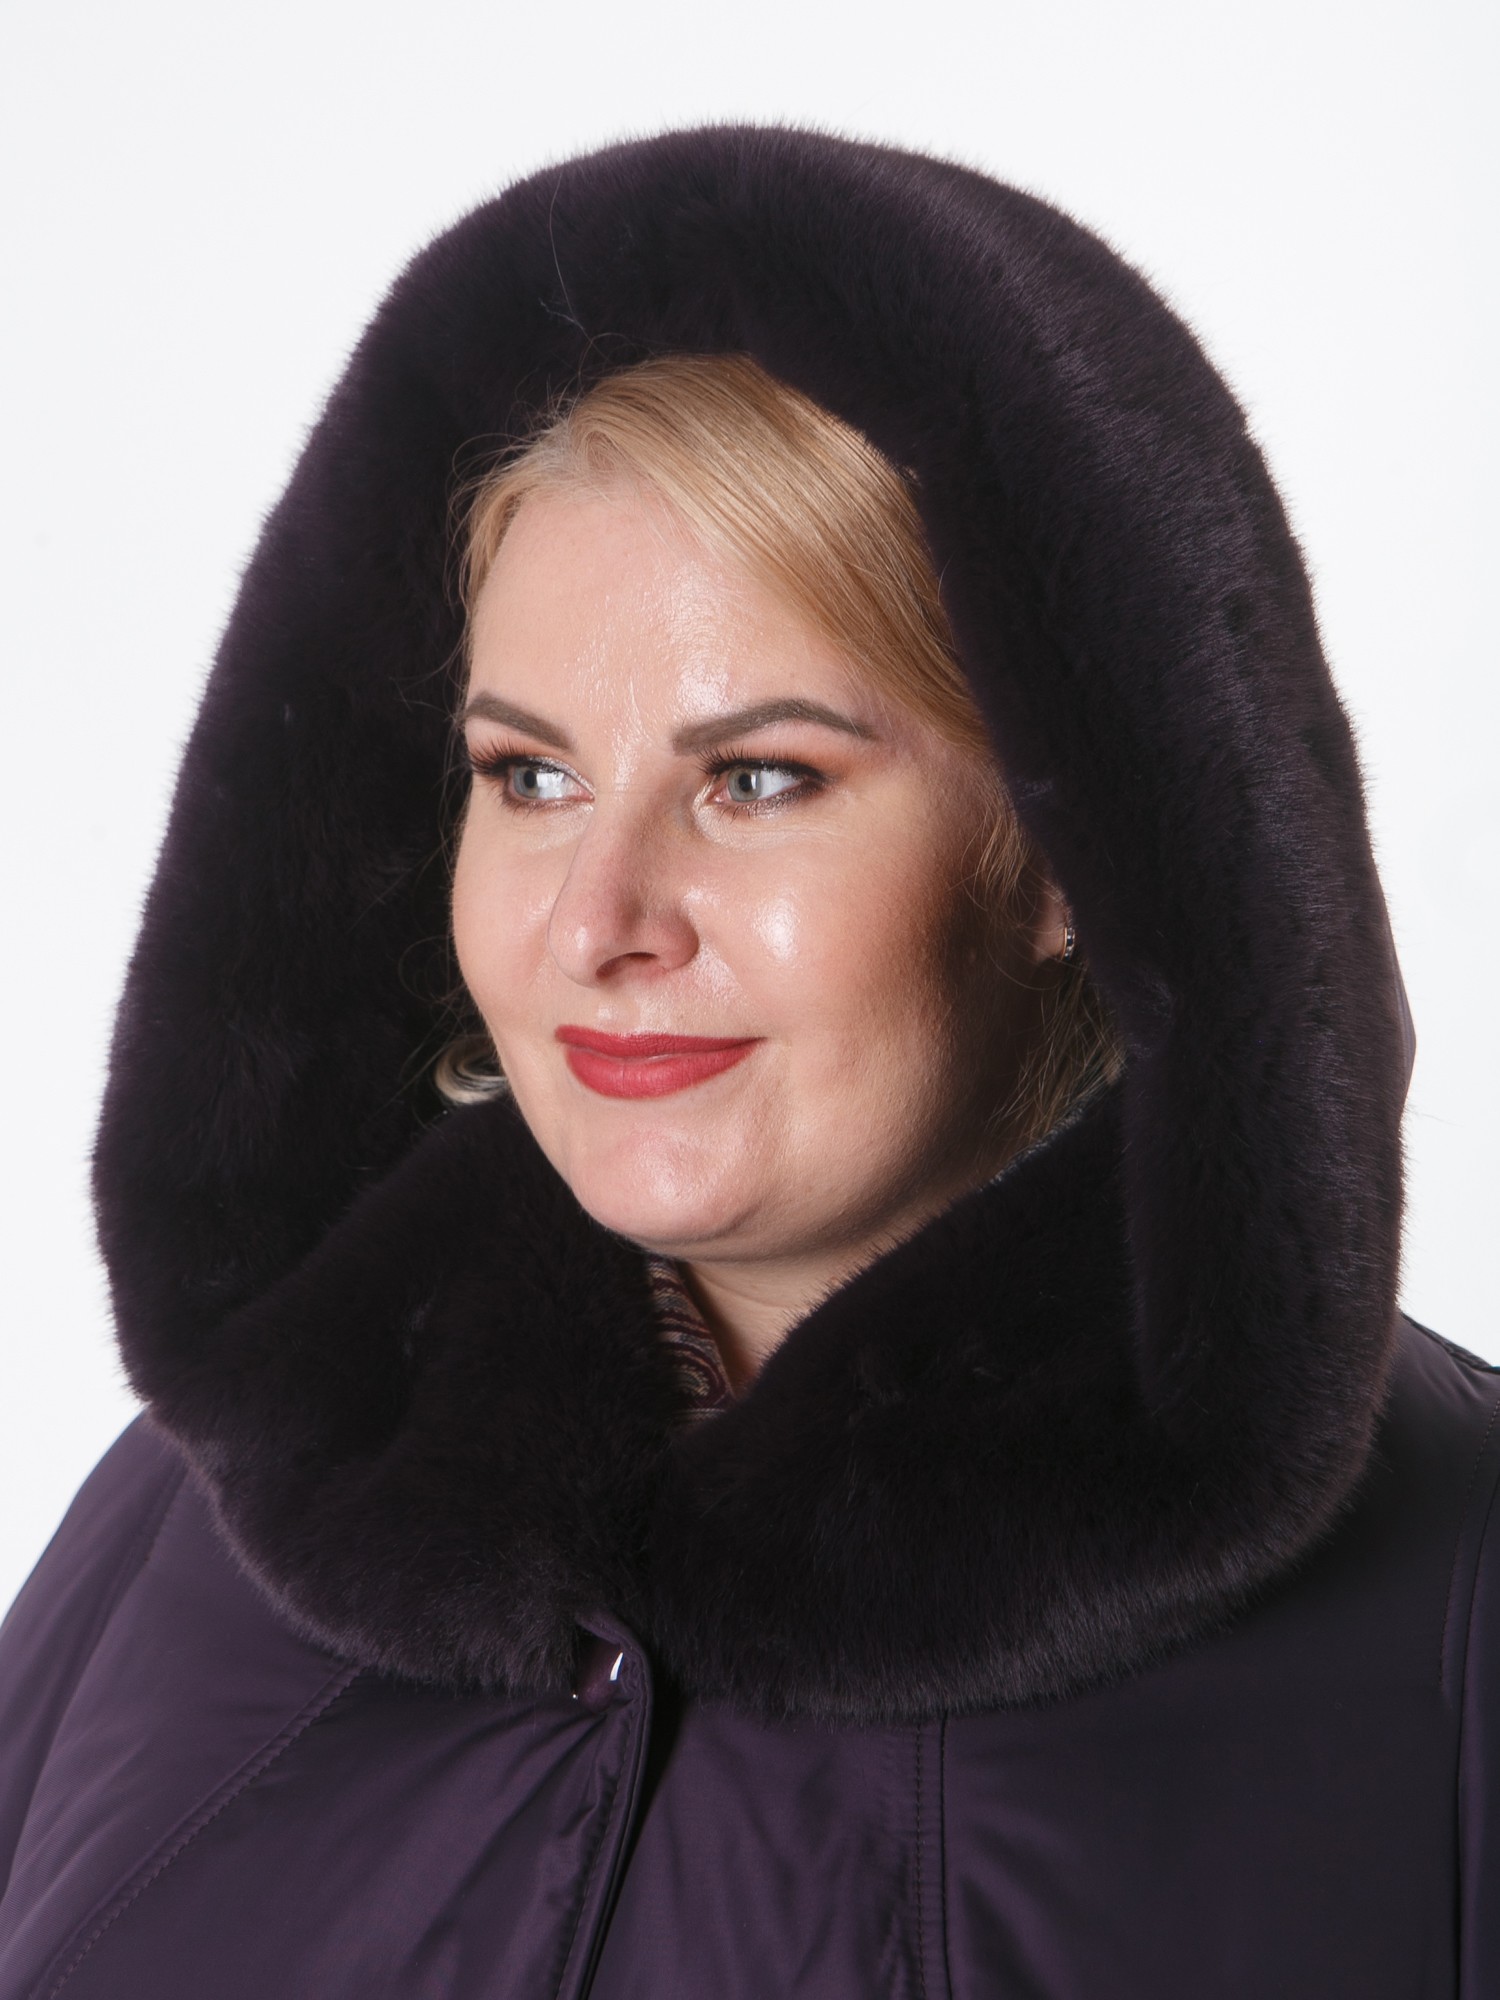 Зимнее пальто цвета баклажан с контрастной отделочной строчкой и норкой, цвет фиолетовый в интернет-магазине Фабрики Тревери